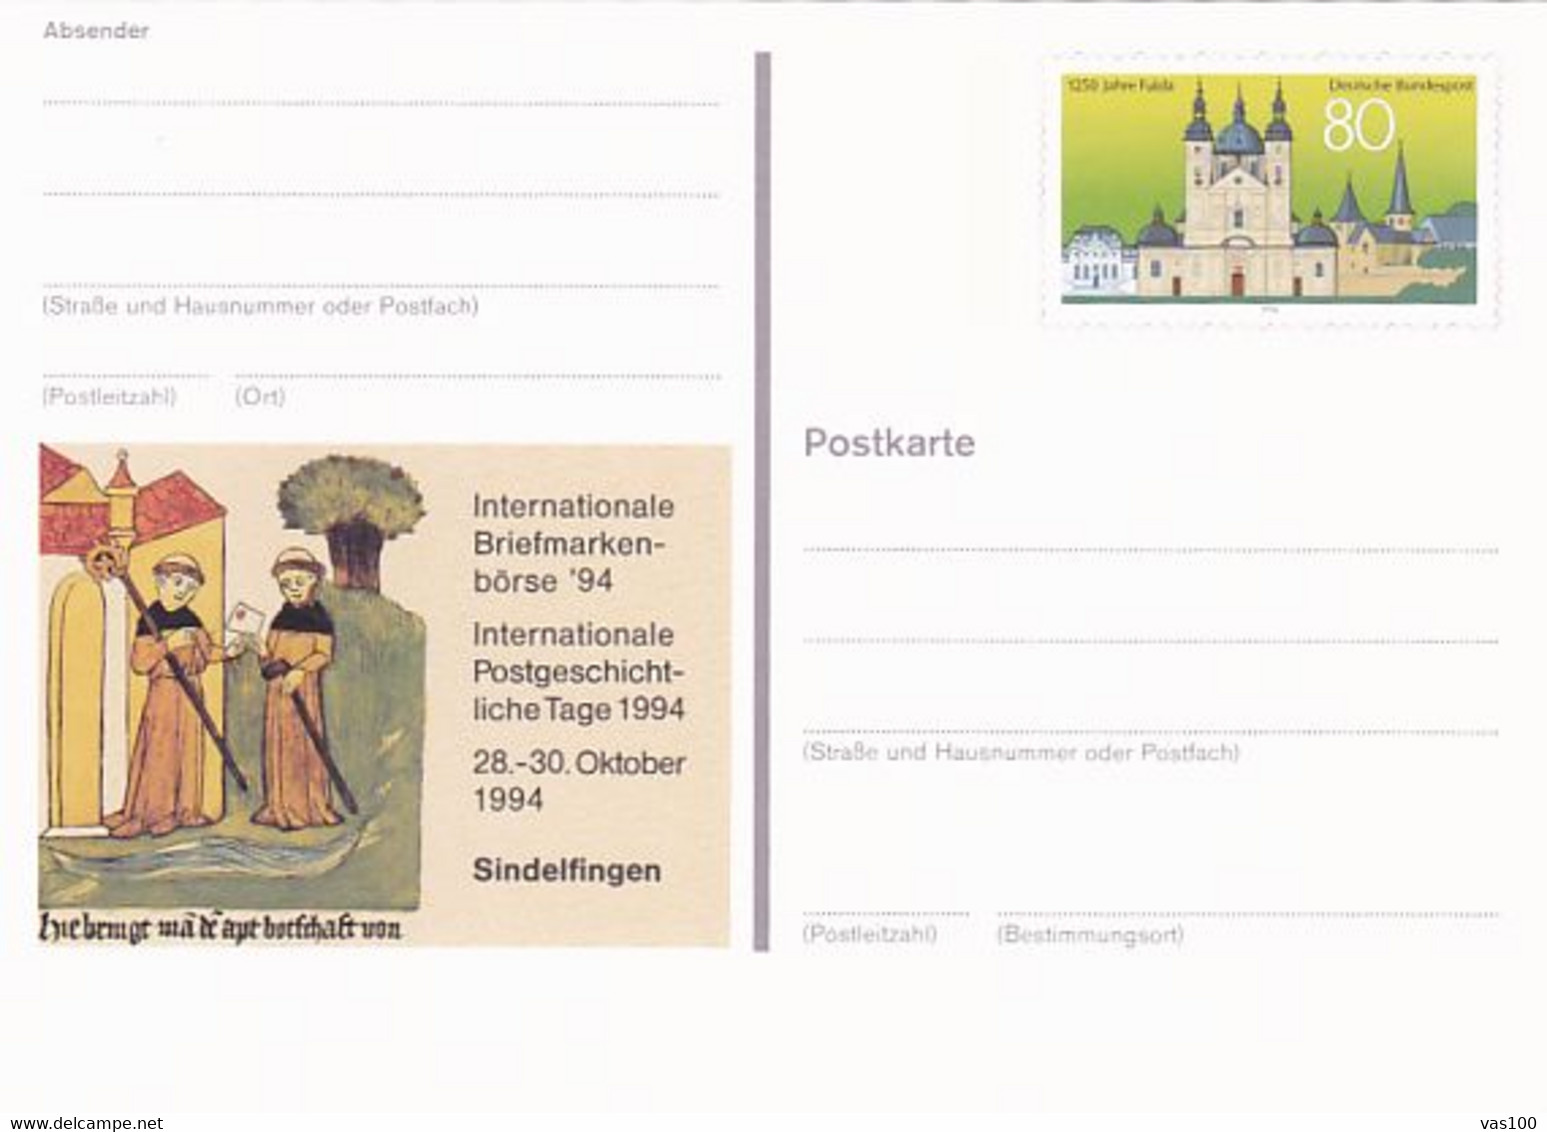 SINDELFINGEN PHILATELIC EXHIBITION, FULDA TOWN, PC STATIONERY, ENTIER POSTAL, 1994, GERMANY - Postkarten - Ungebraucht